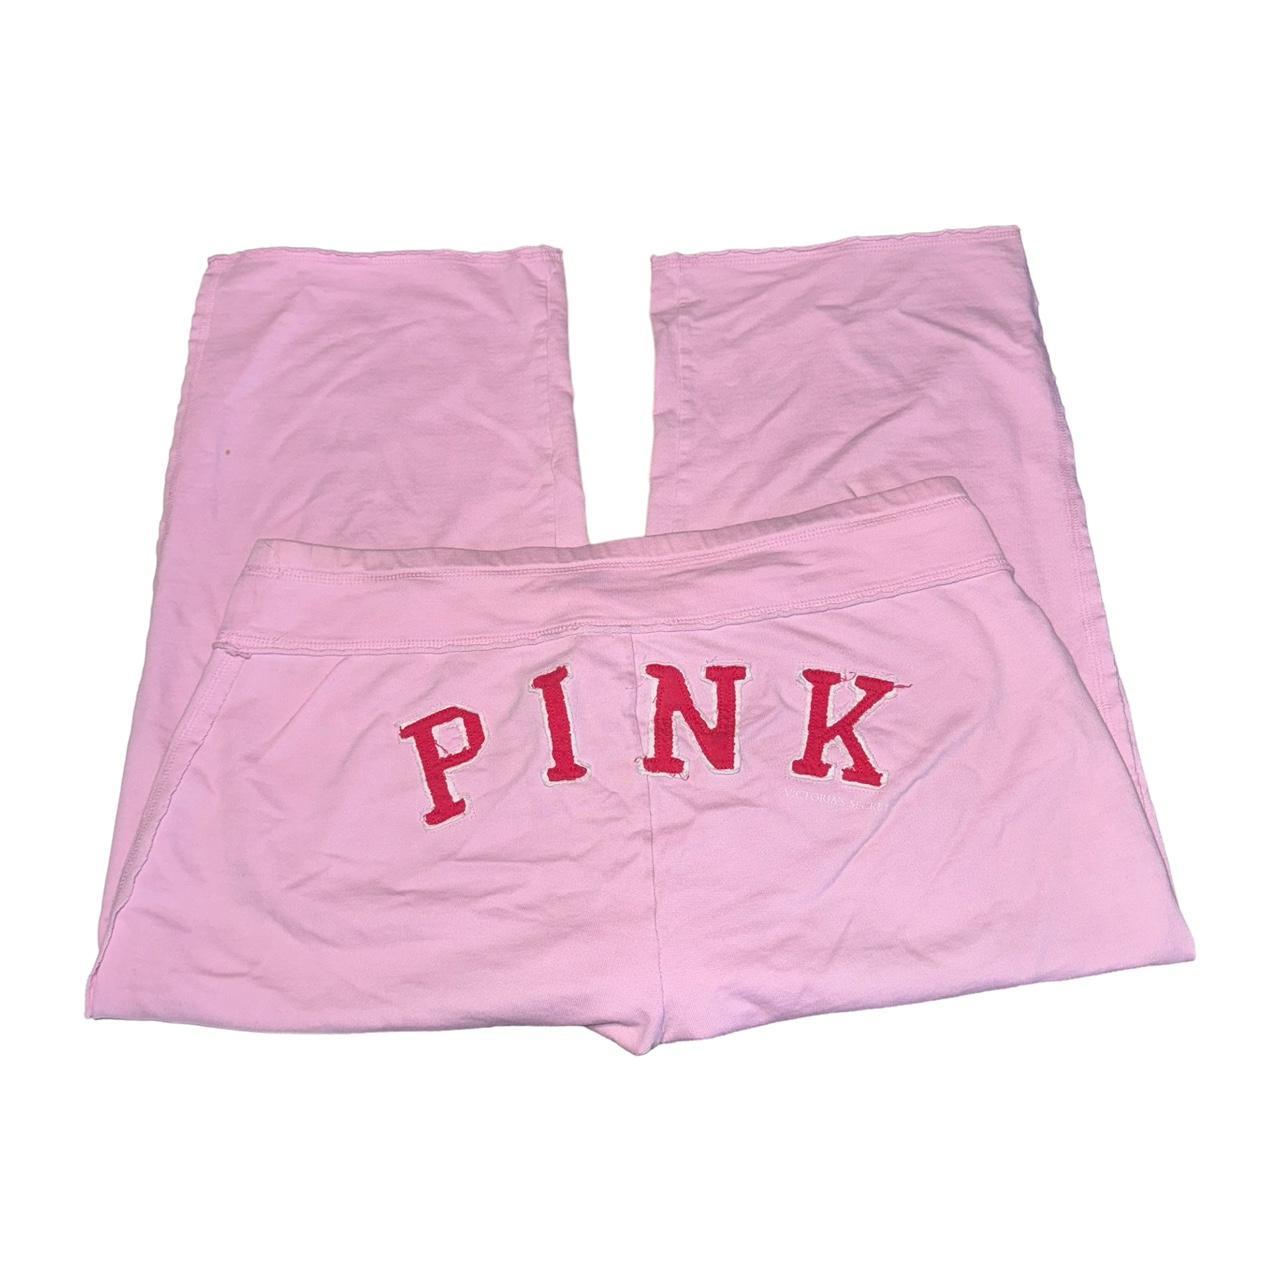 Brand: Victorias Secret Description: PINK VS - Depop